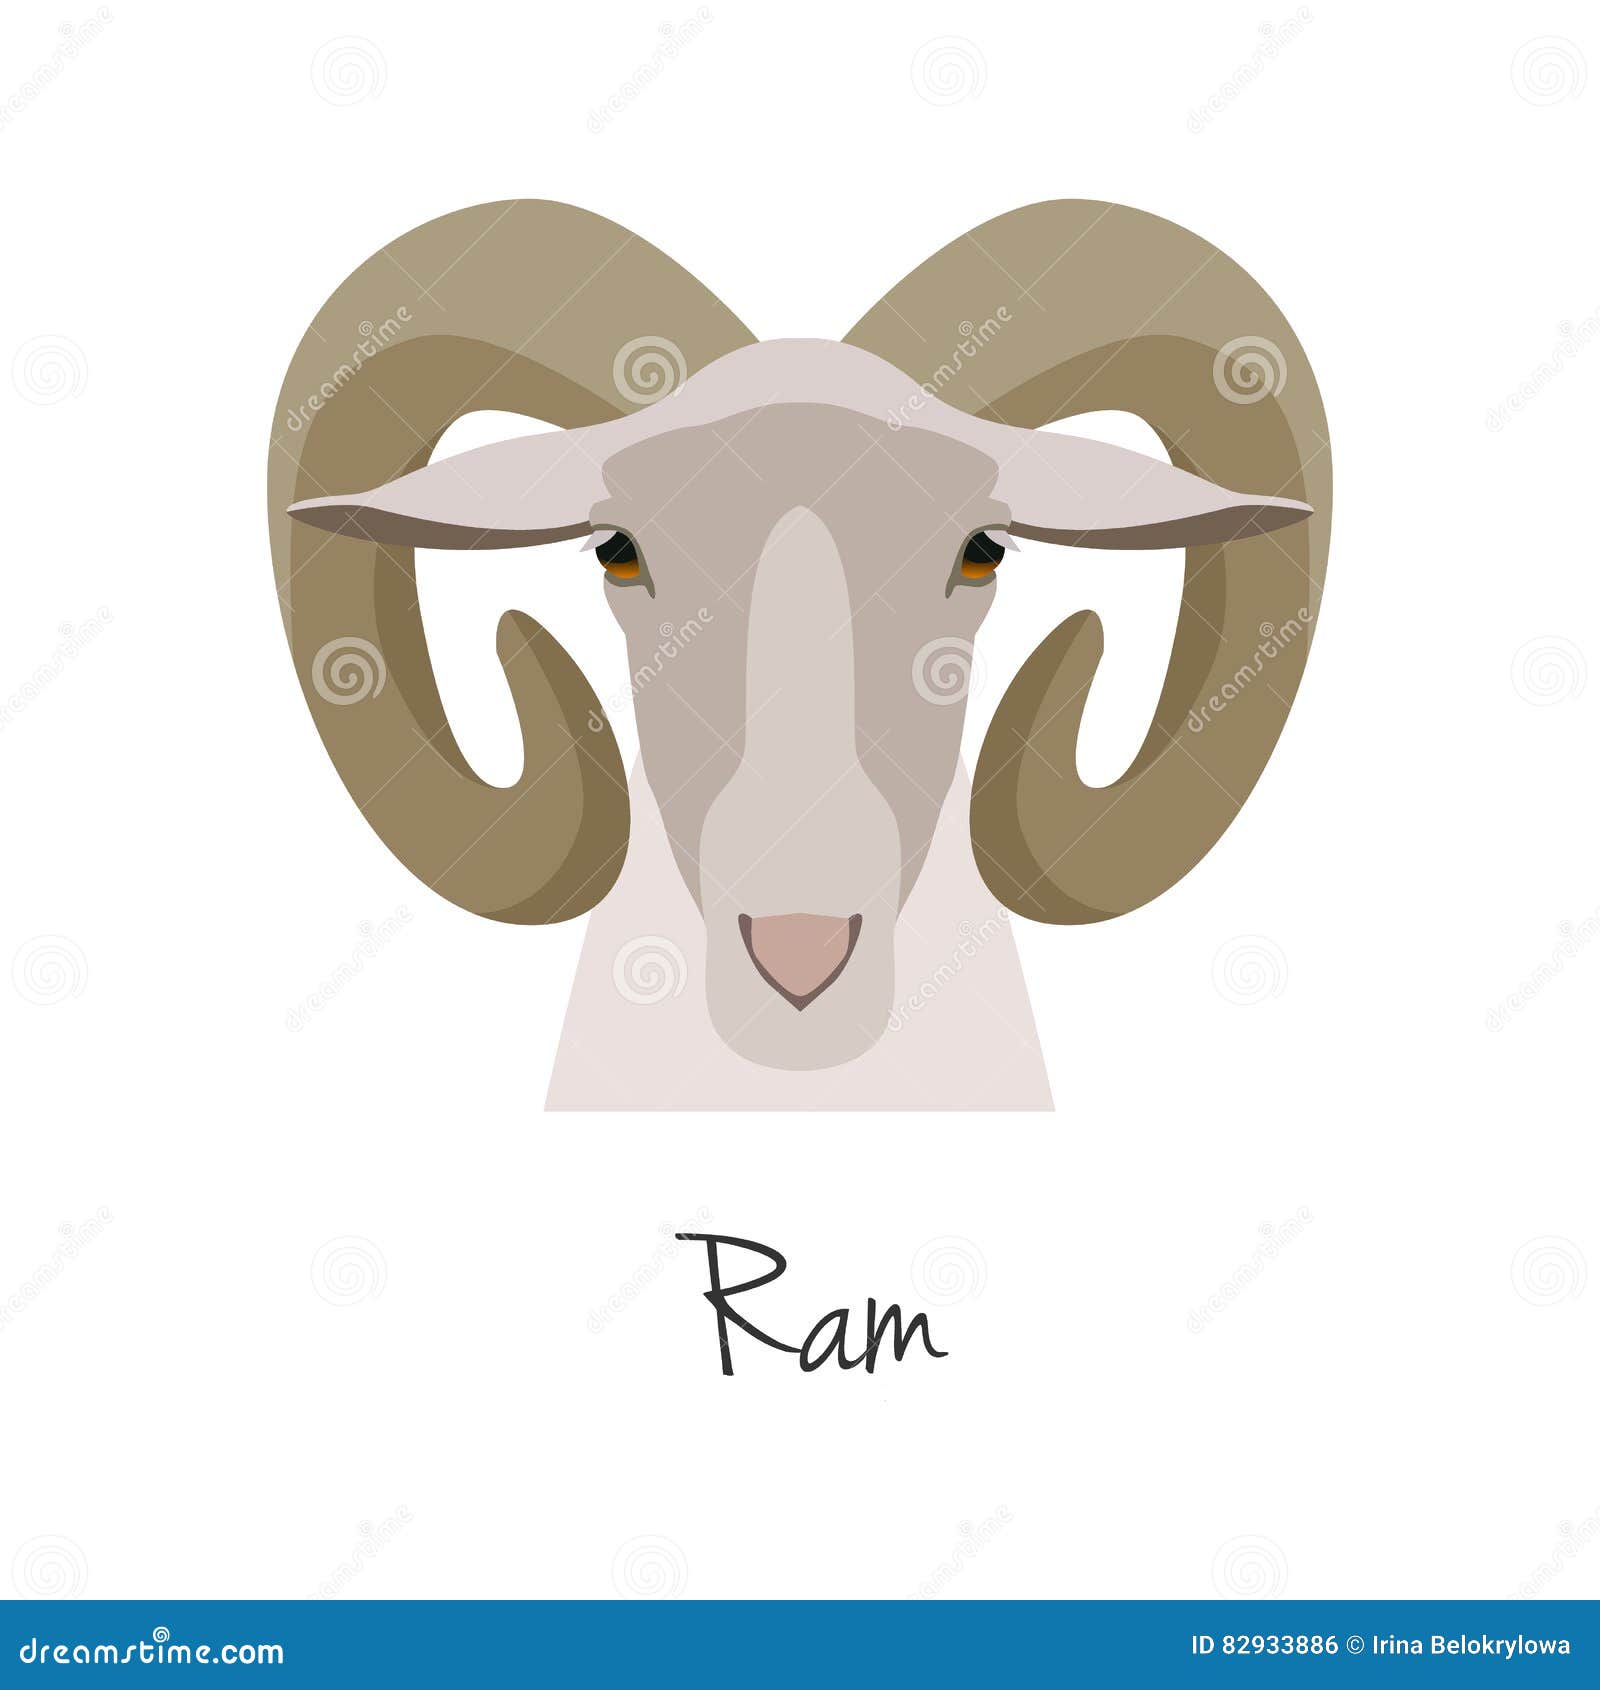 ram head cartoon